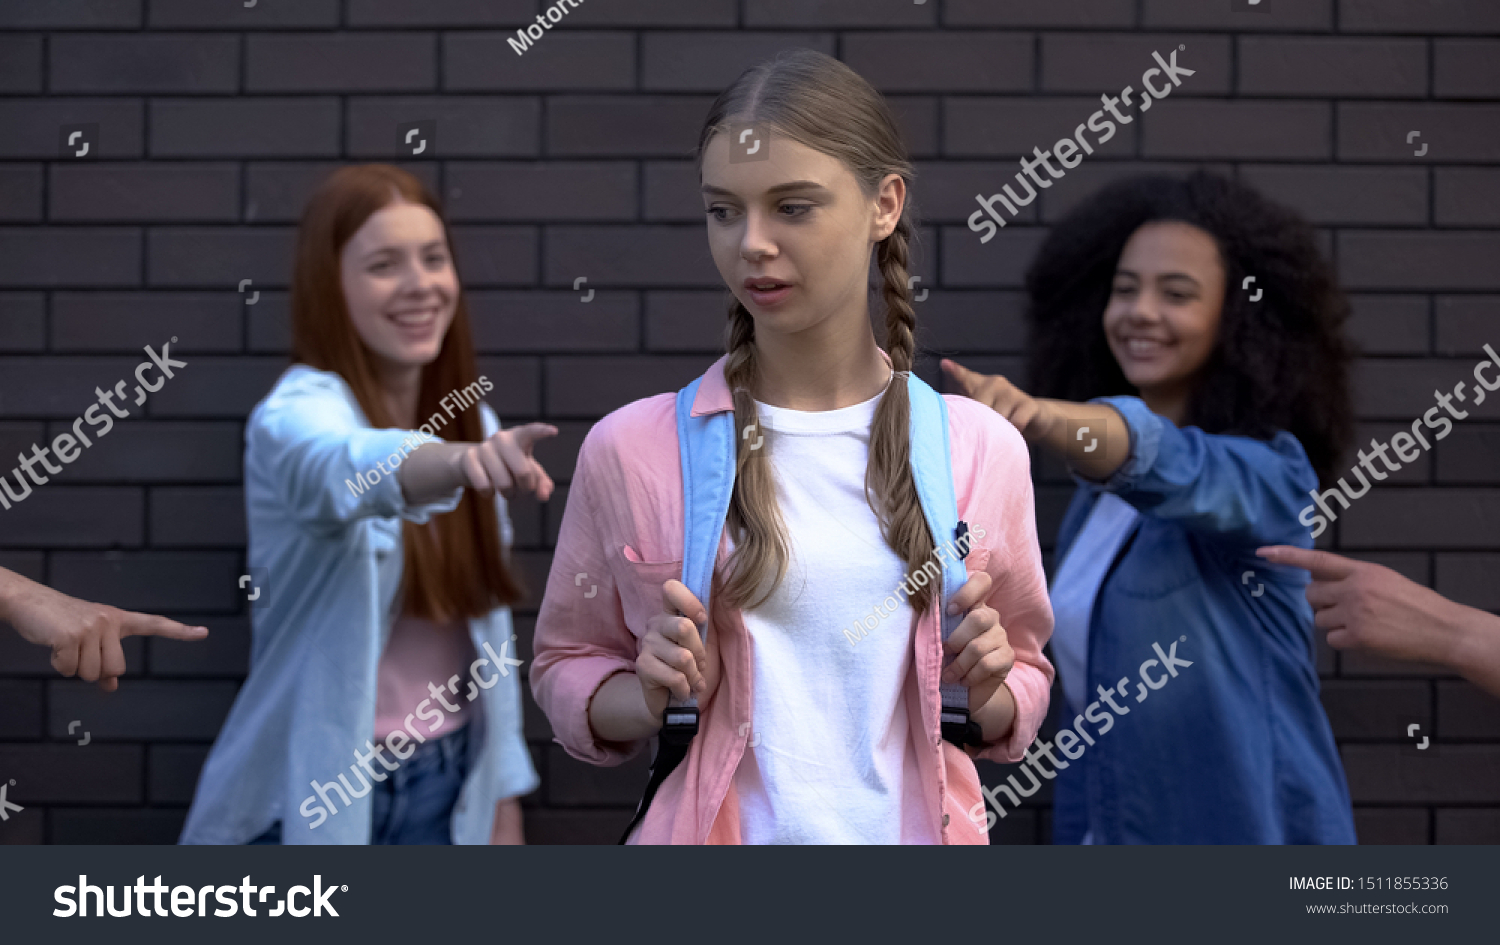 Female peers pointing fingers desperate schoolgirl, college teasing condemnation #1511855336